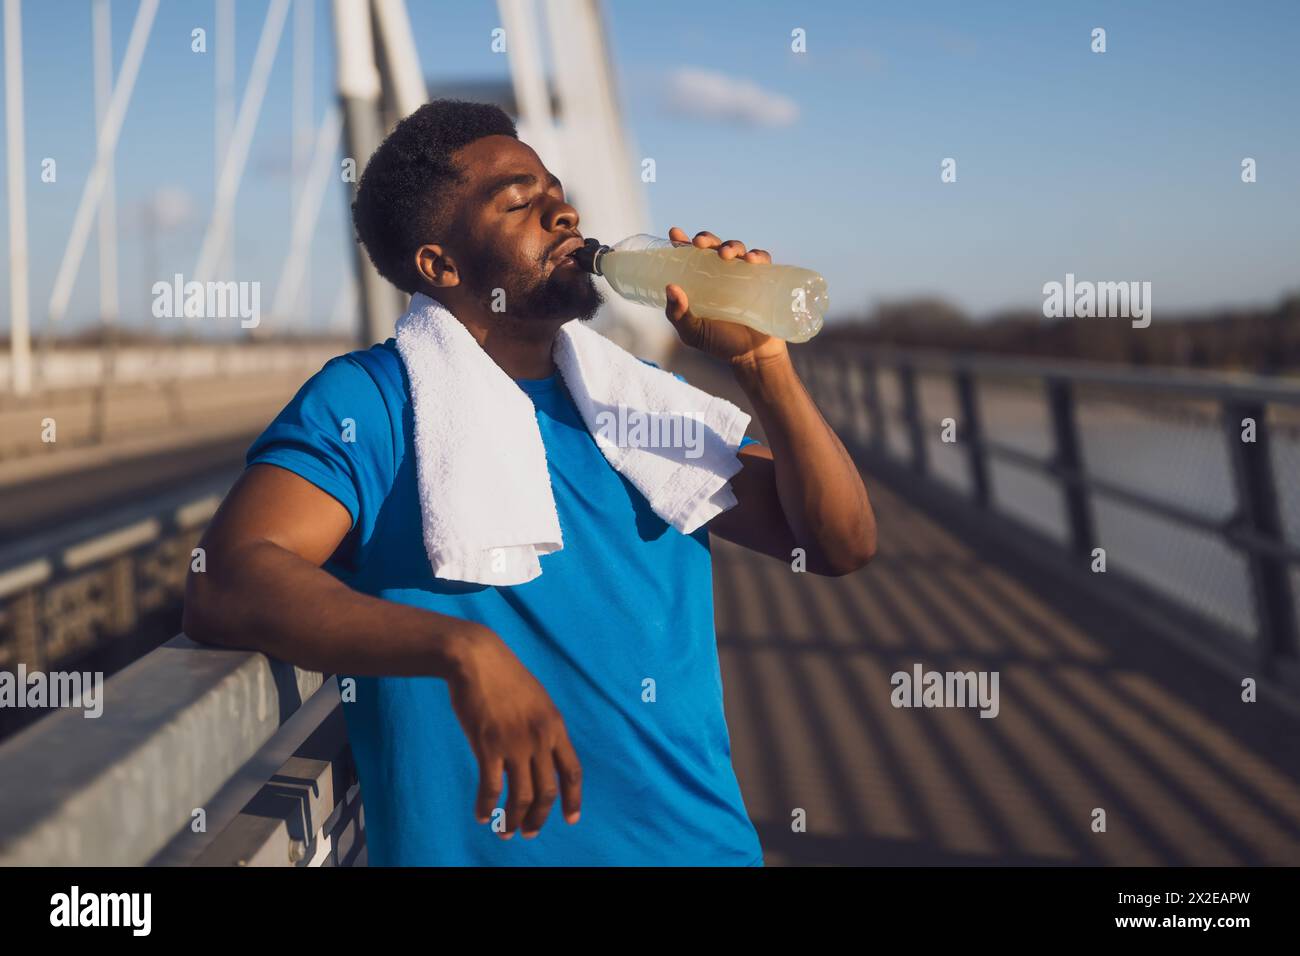 Porträt eines jungen afroamerikanischen Mannes, der nach dem Joggen Wasser trinkt und sich entspannt. Stockfoto